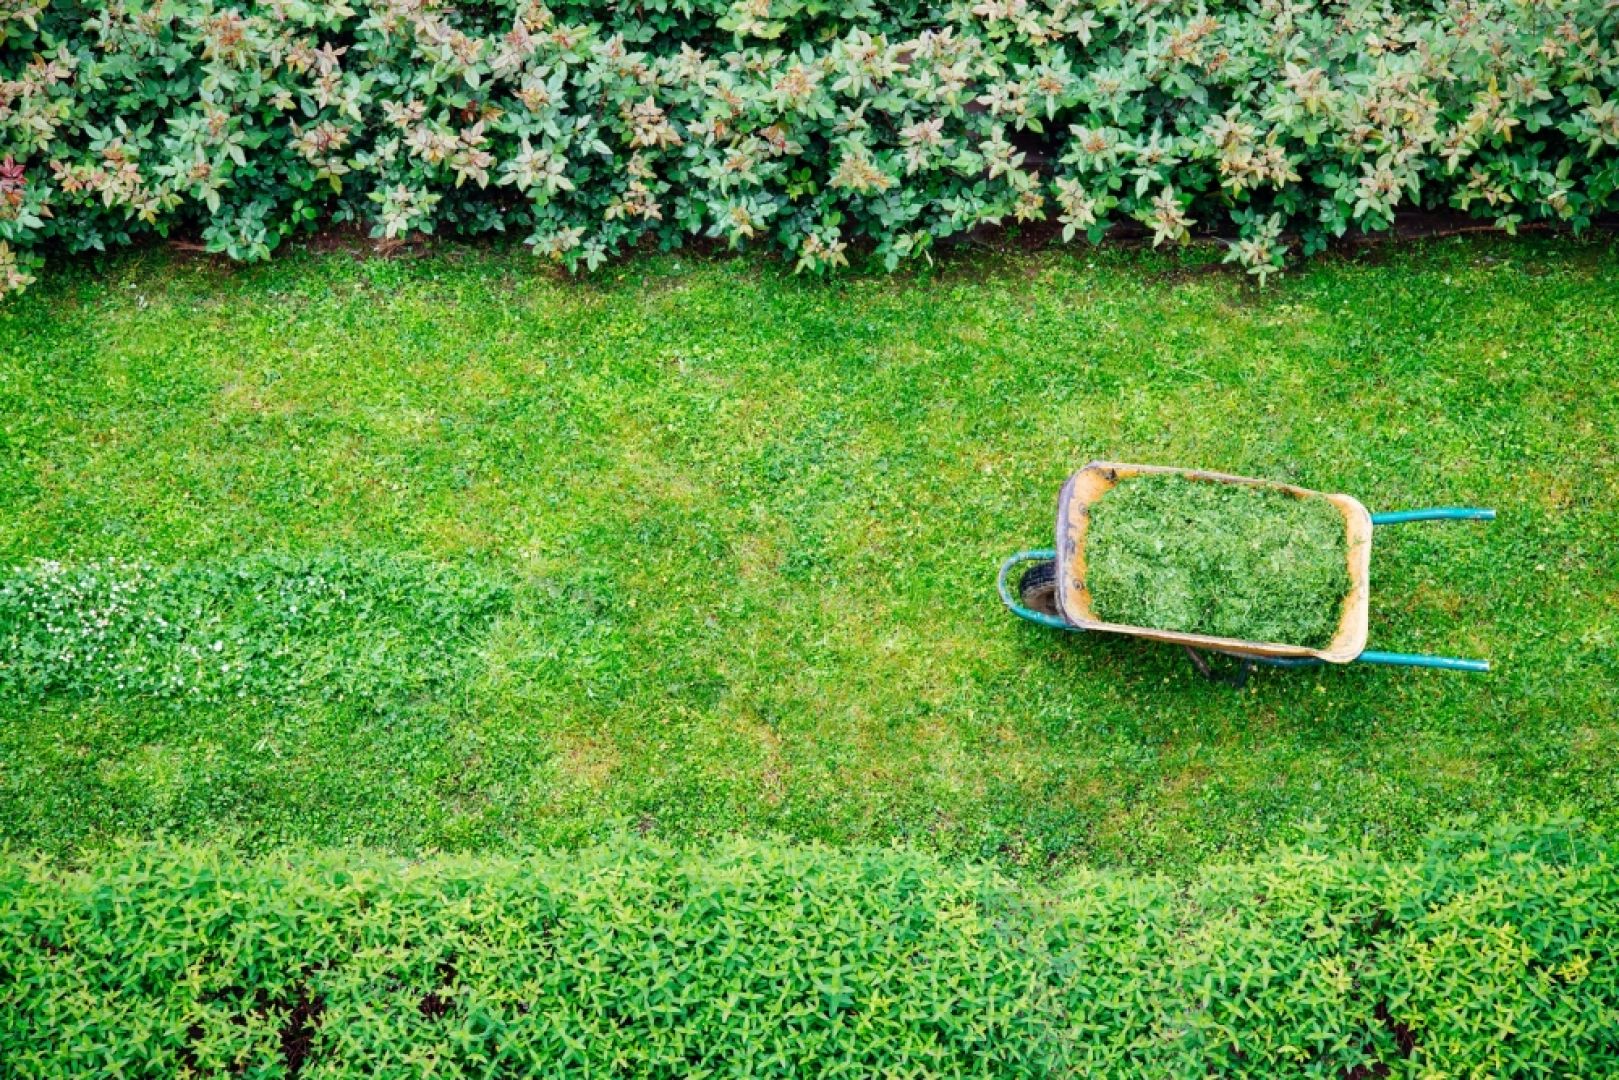 Odpowiednio wypielęgnowany trawnik jest wizytówką domu i ogrodu. Fot. Krysiak